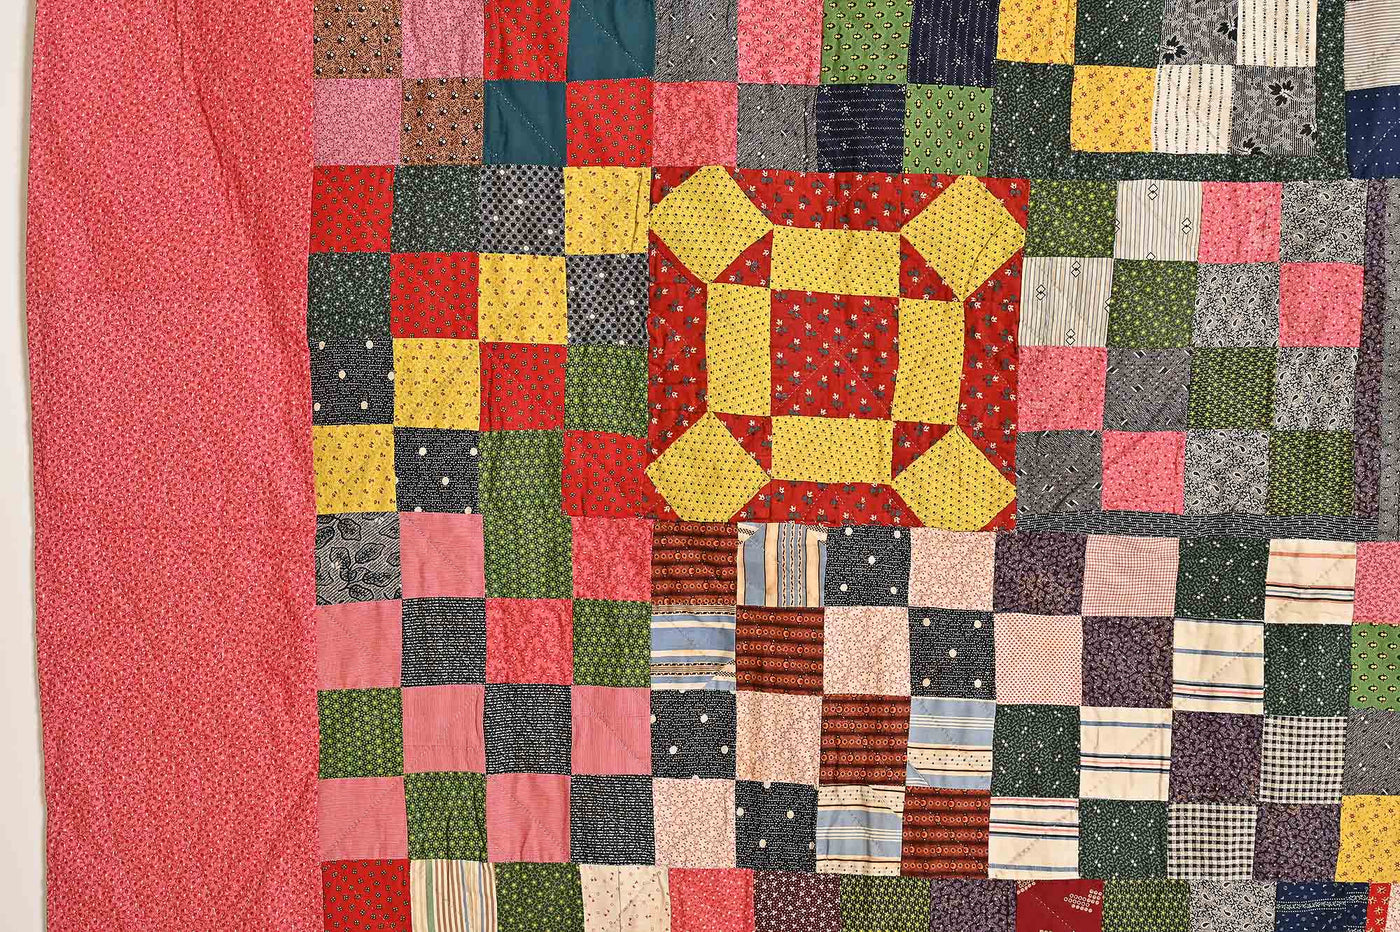 nine-patch-sampler-quilt-1453242-left-border-detail-5